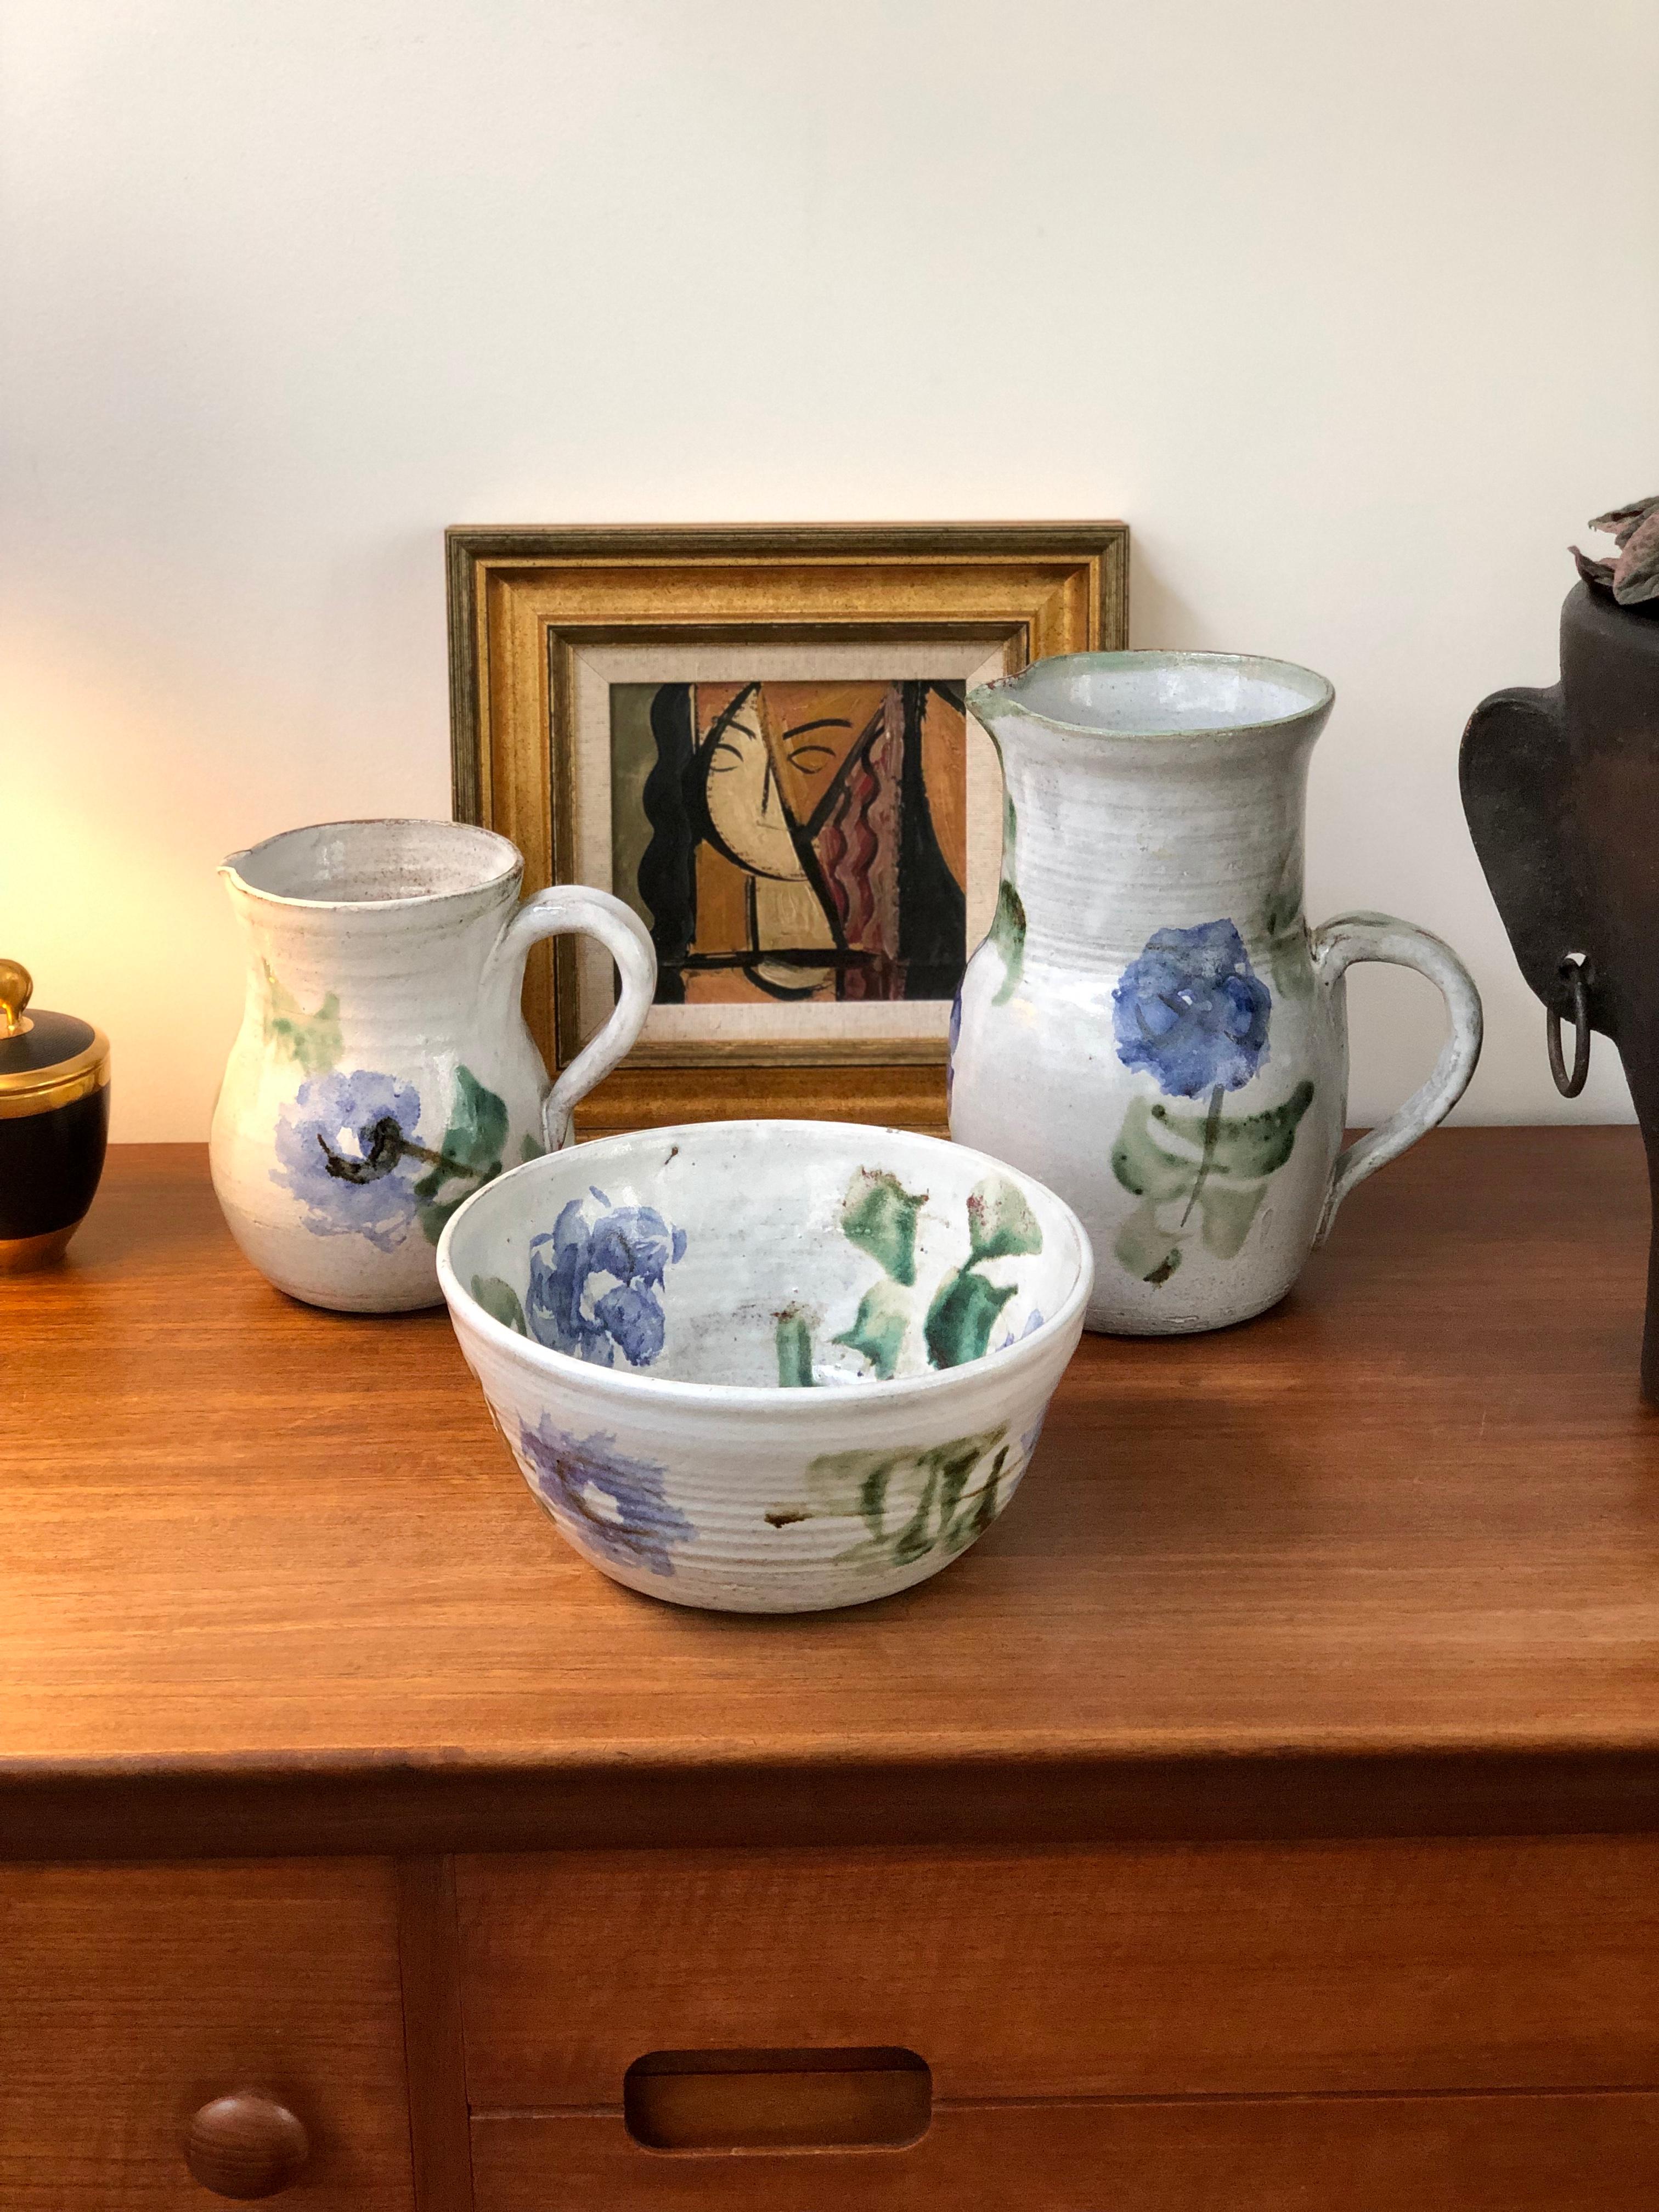 Dekorative Keramikschale aus der Mitte des Jahrhunderts (um 1960) von Albert Thiry (1932-2009). Ein klassisches Design- und Dekorationsschema von Thiry. Die Grundfarbe dieser Schale ist eine kreideweiße Glasur mit gemalten blauen Blumen und